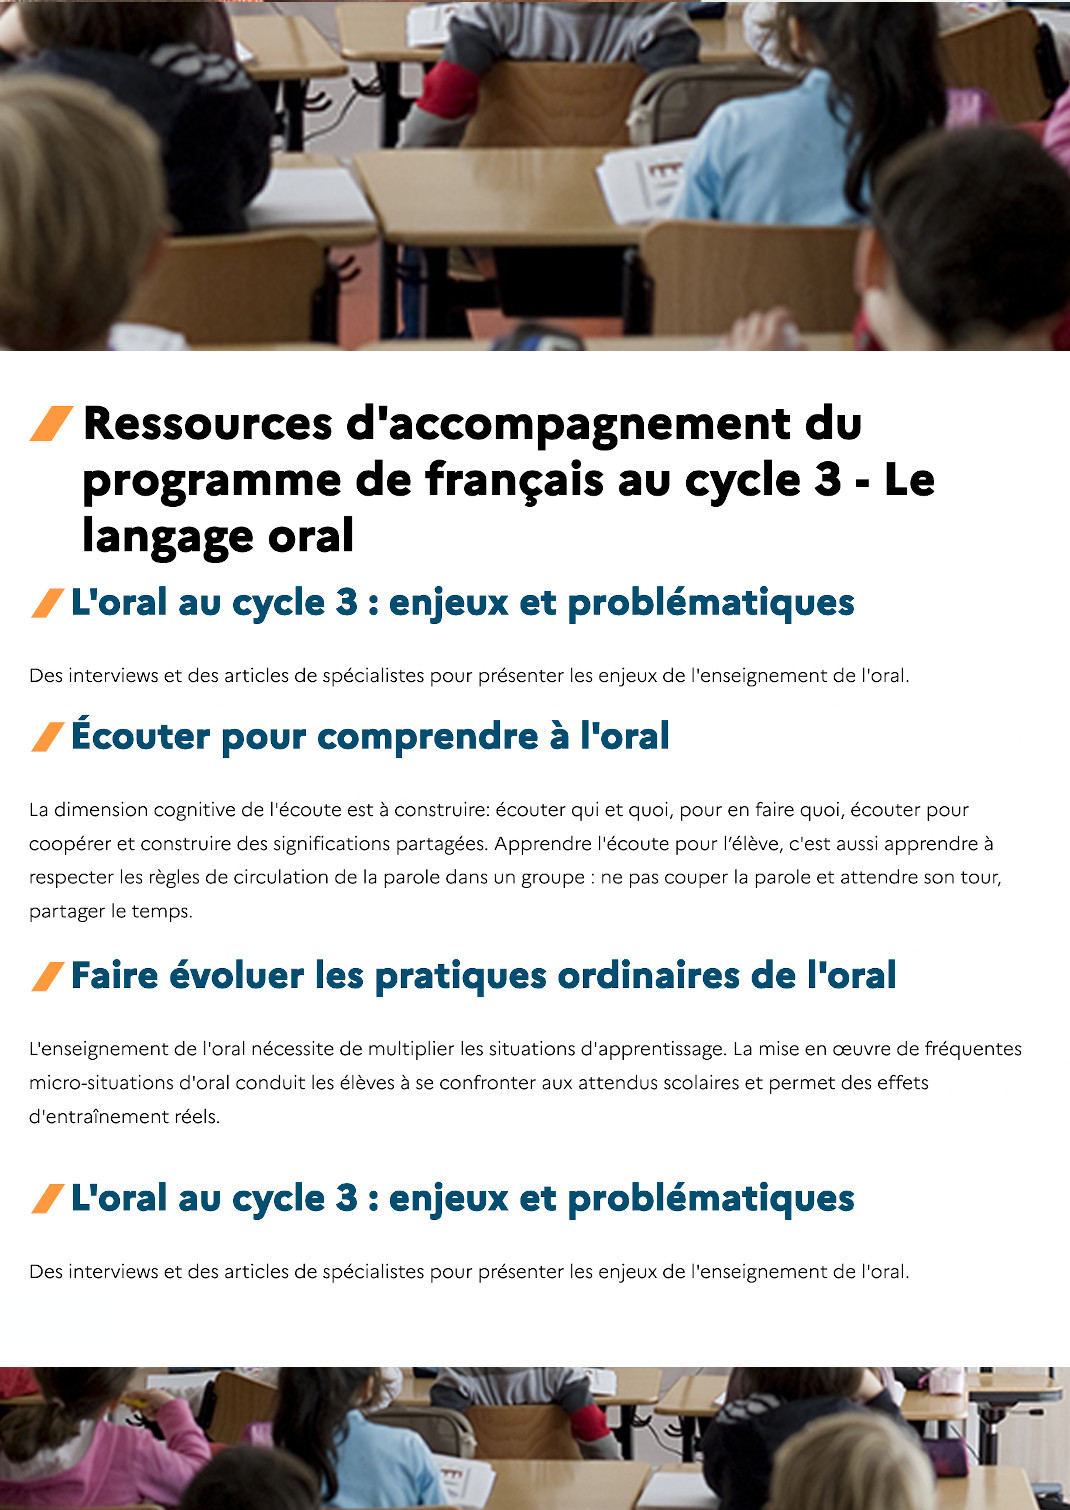 Ressources d'accompagnement du programme de français au cycle 3 - Le langage oral